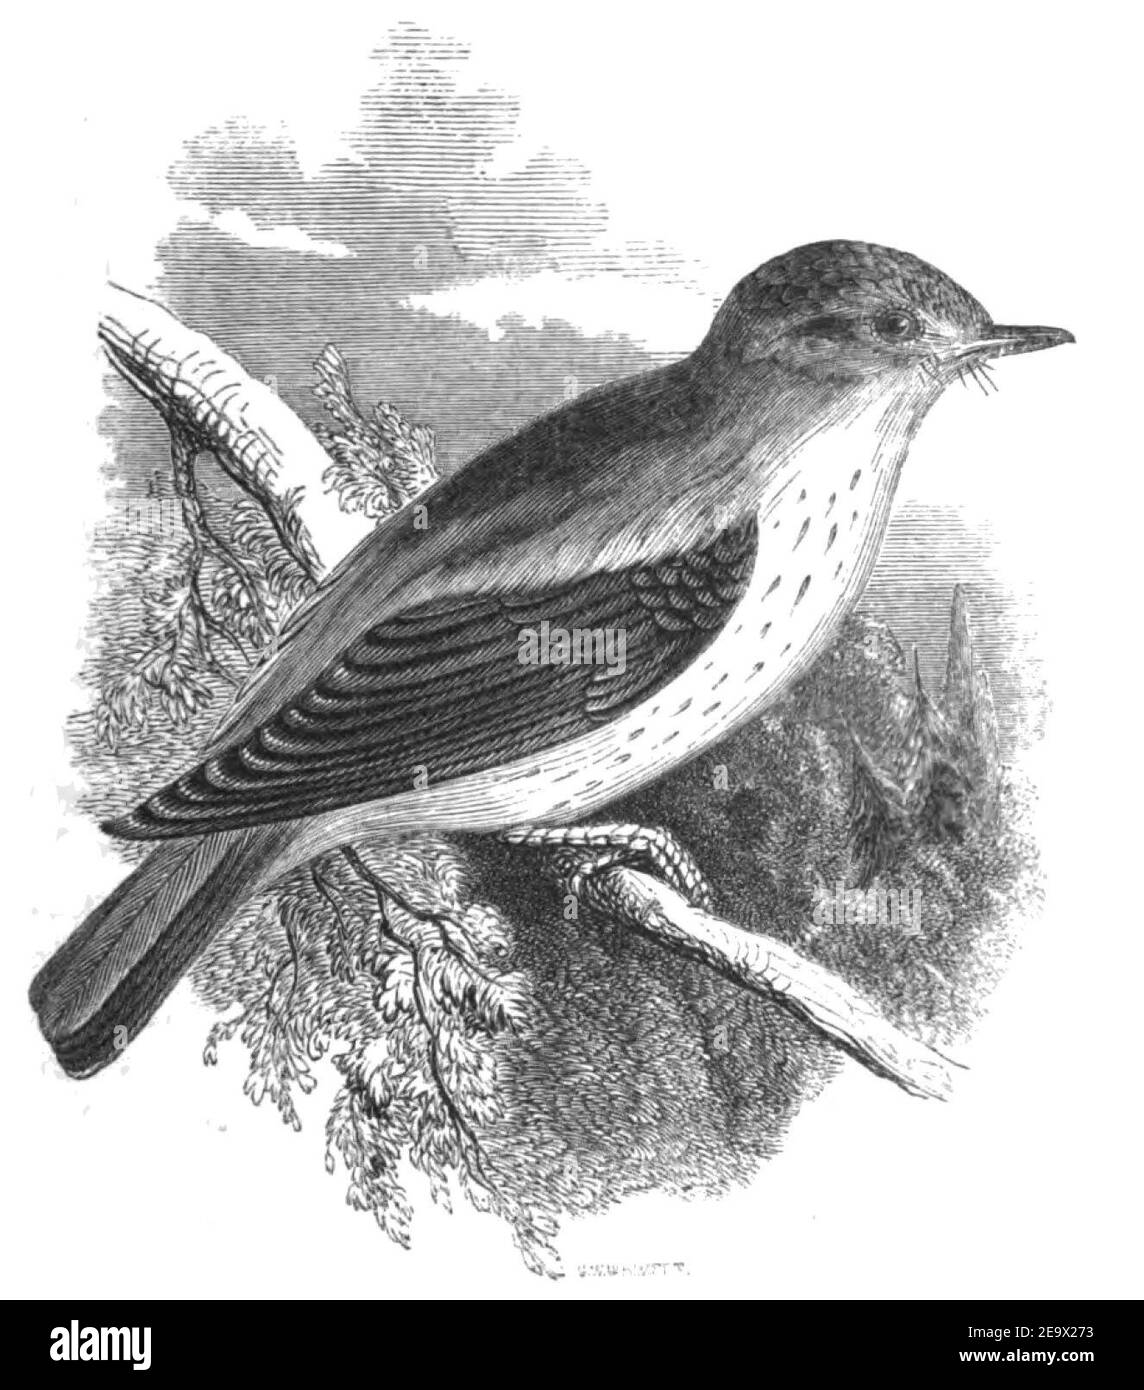 Natural History, Birds - Flycatcher. Stock Photo